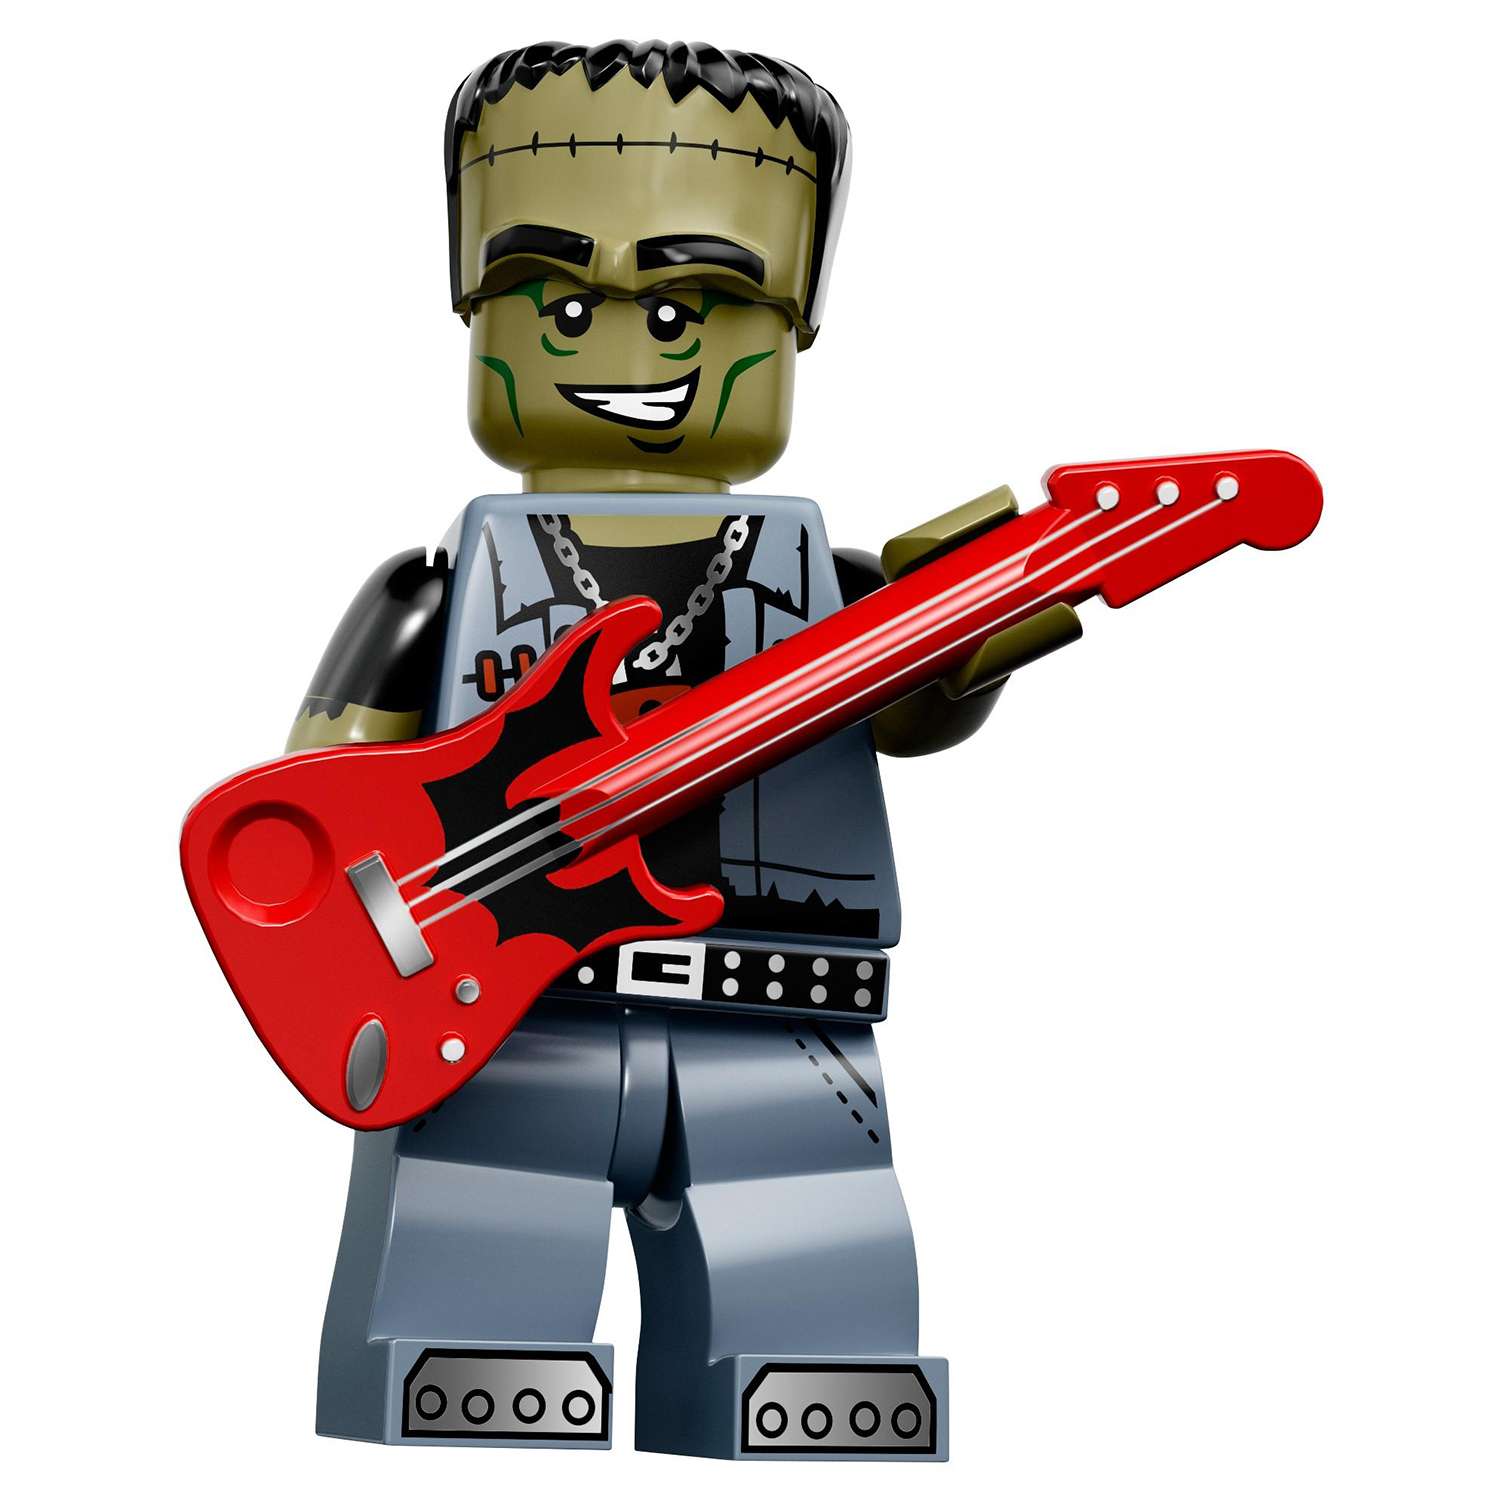 Конструктор LEGO Minifigures серия 14: Монстры (71010) в непрозрачной упаковке (Сюрприз) - фото 13